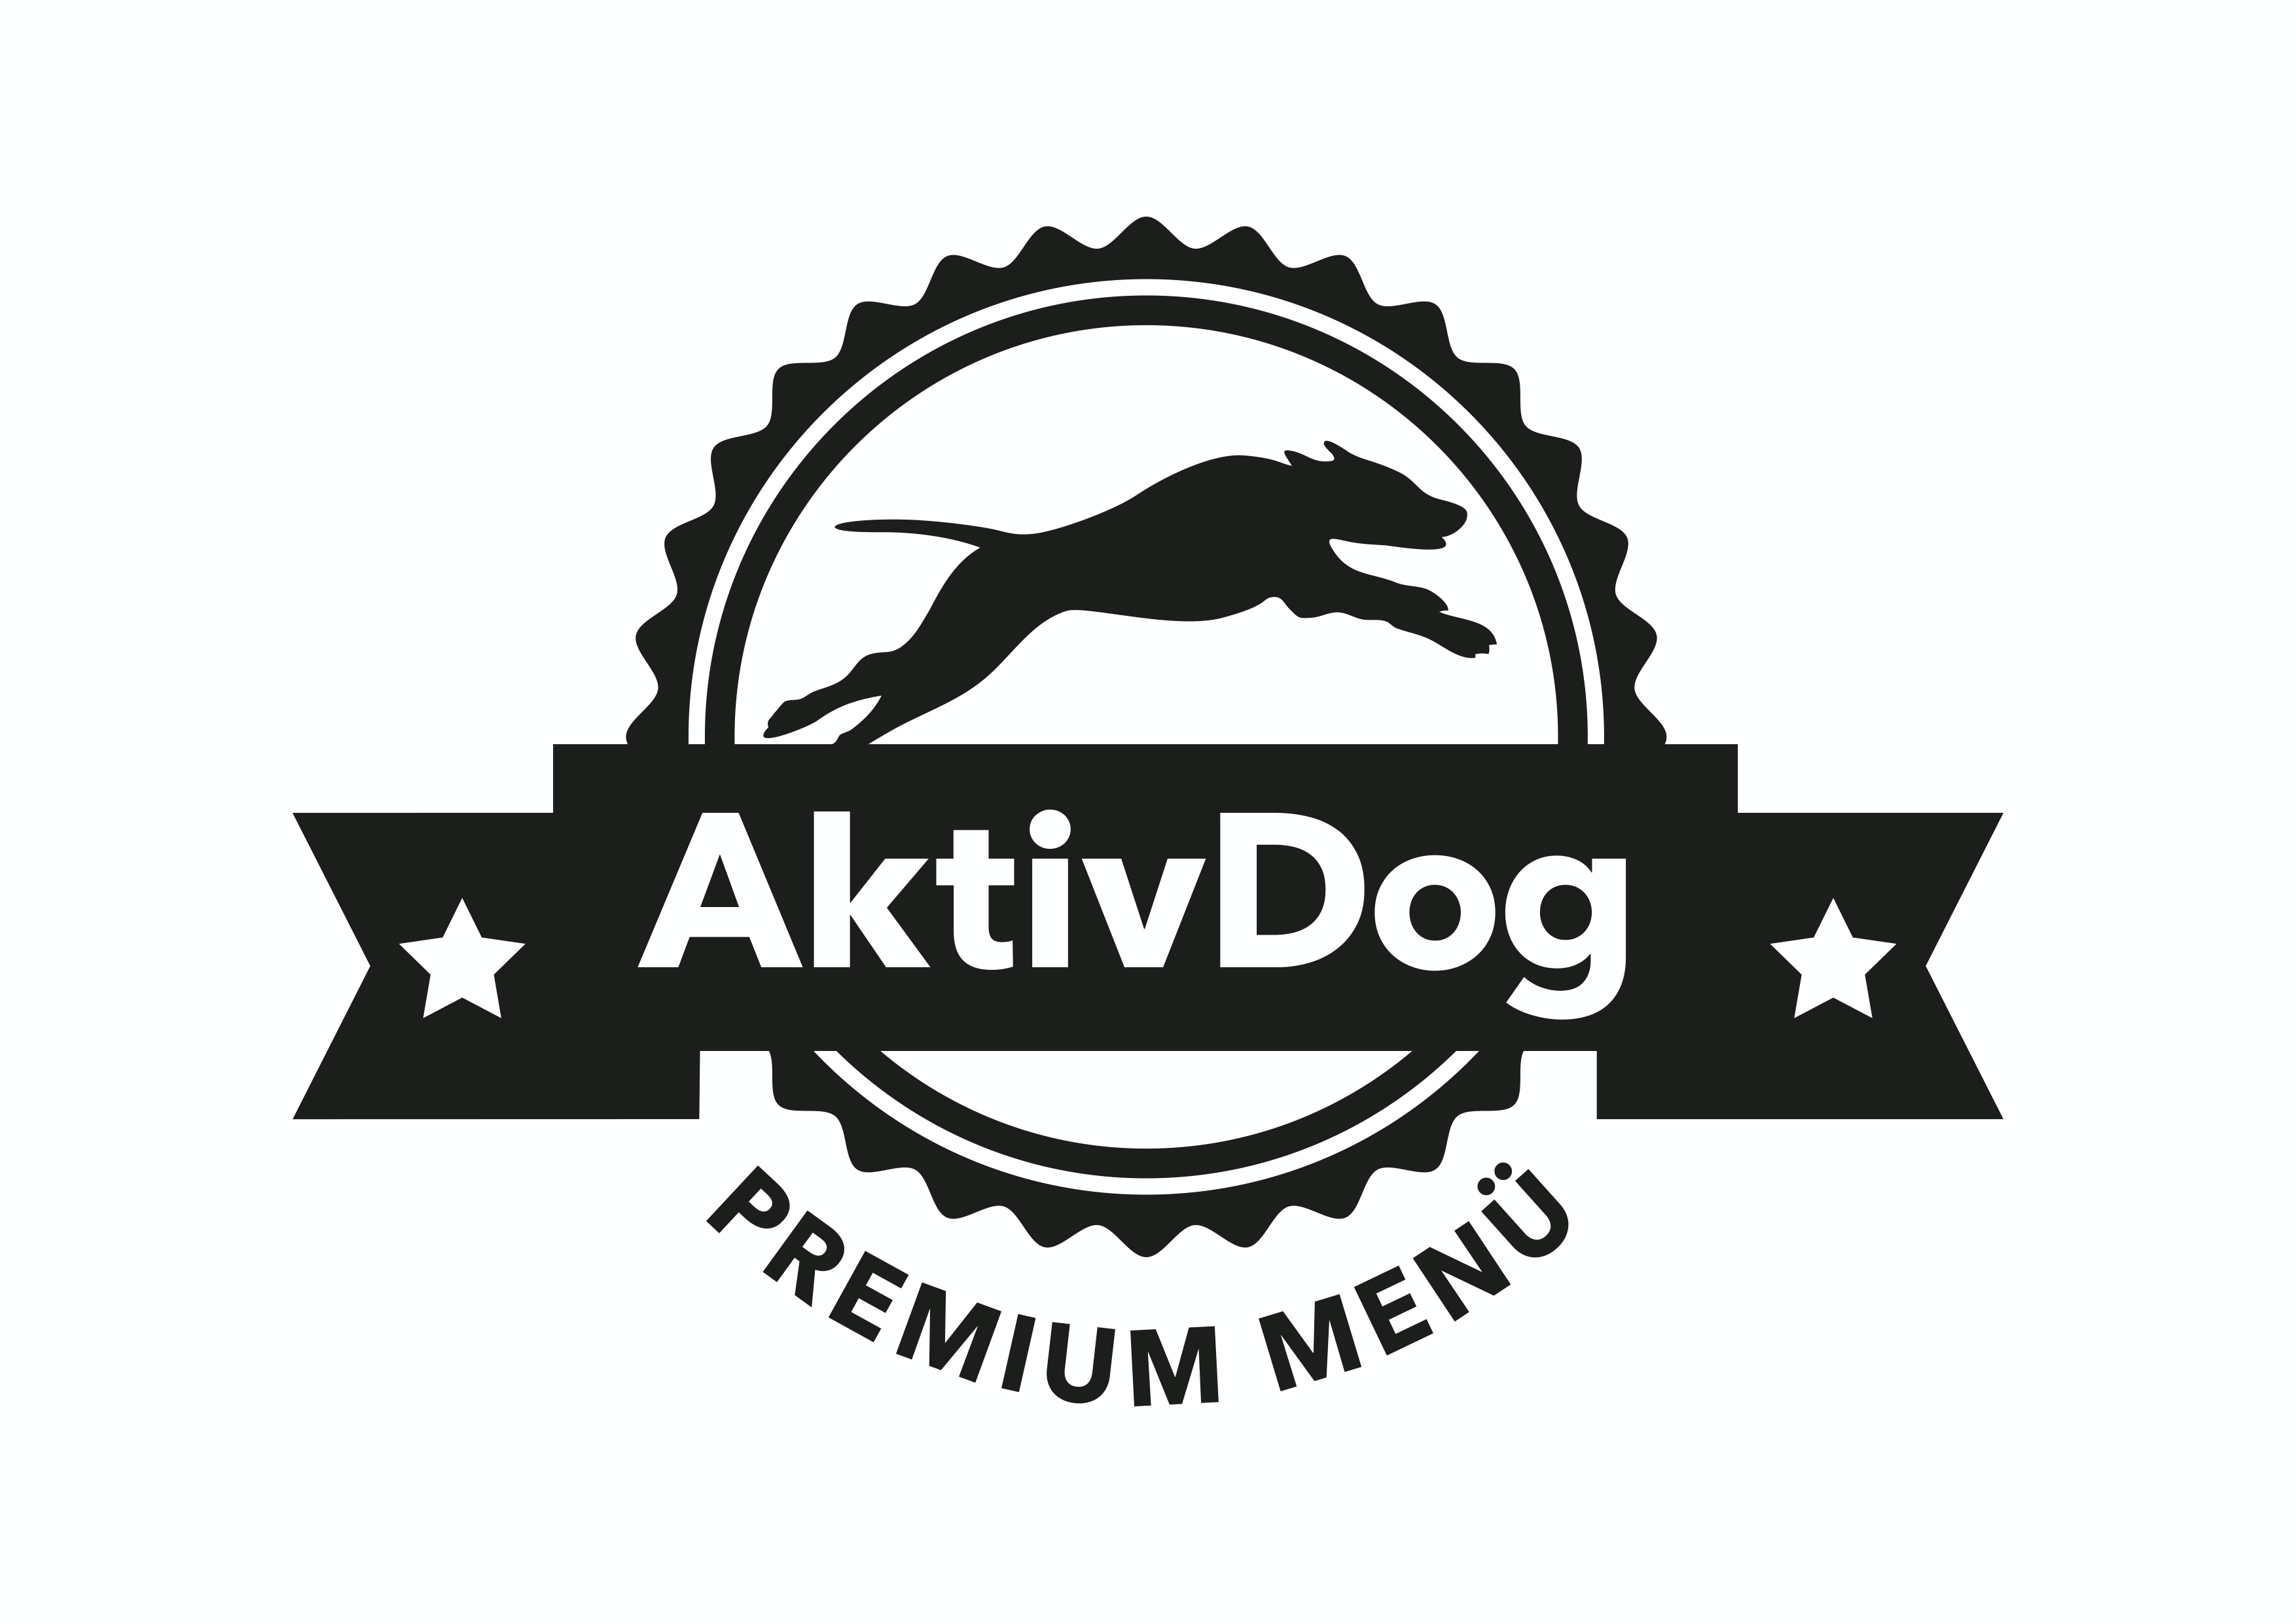 Goldsponsor: Aktivdog